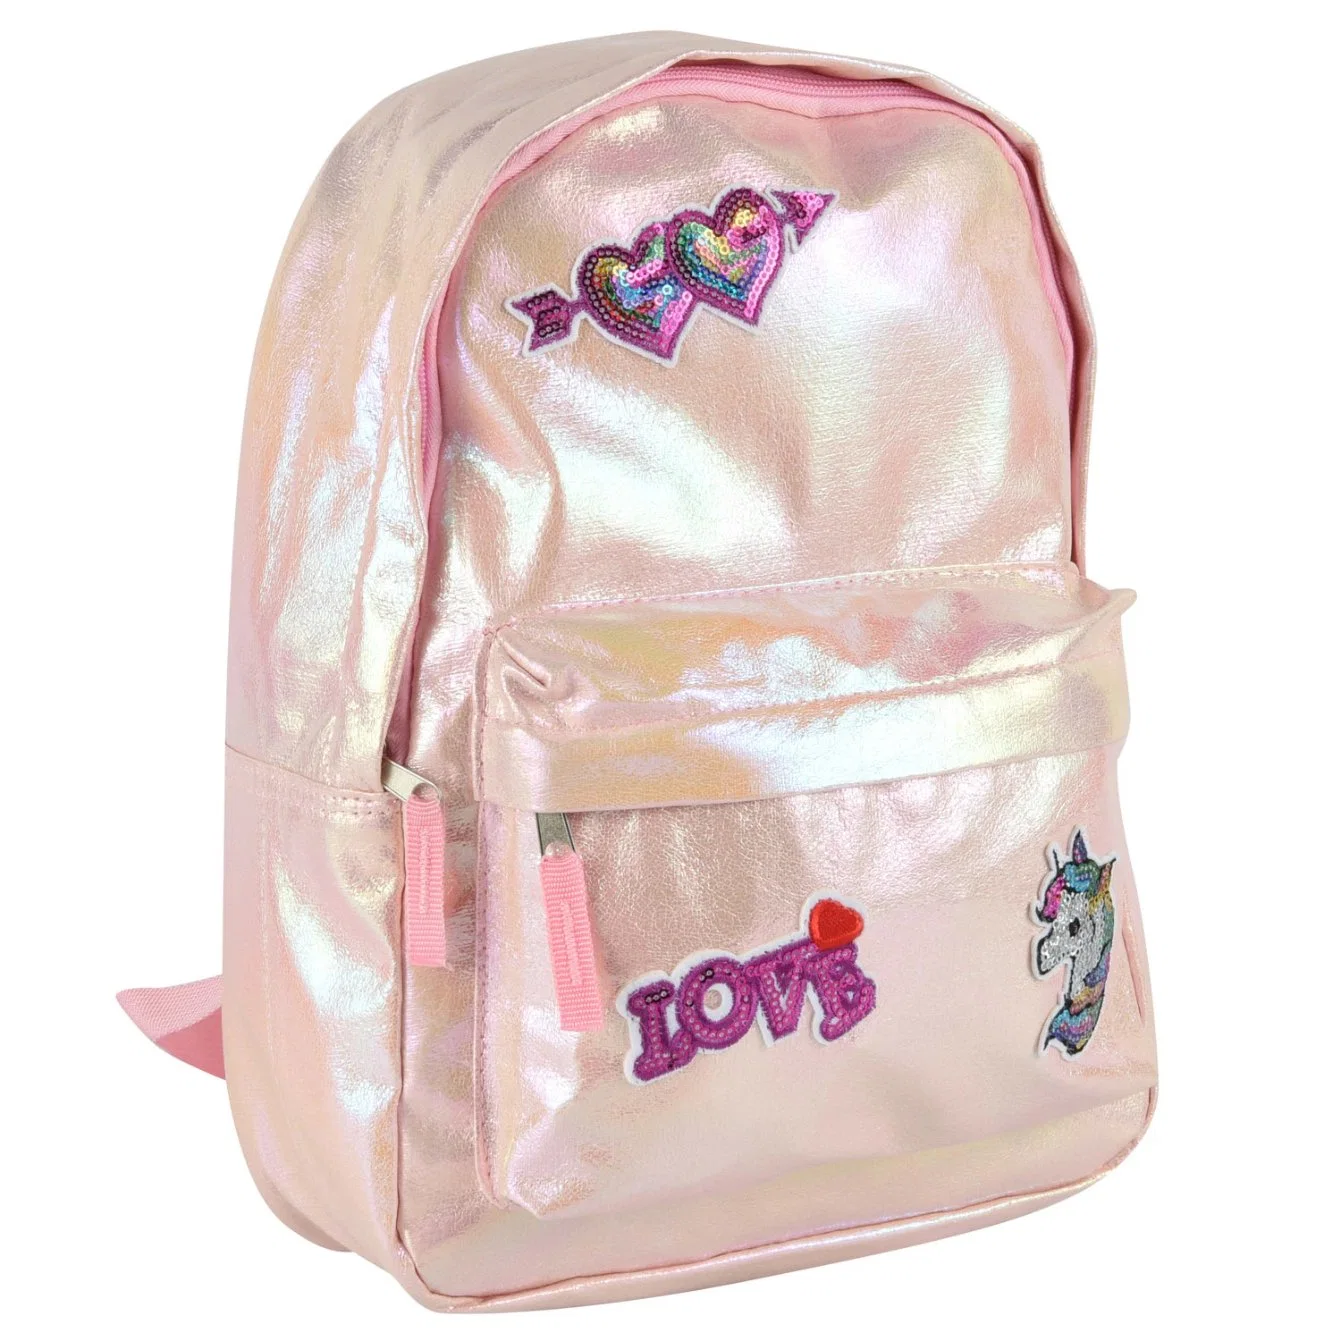 Design exclusivo cintilantes Unicorn Pink mochilas Lazer Sacos de escola para meninas